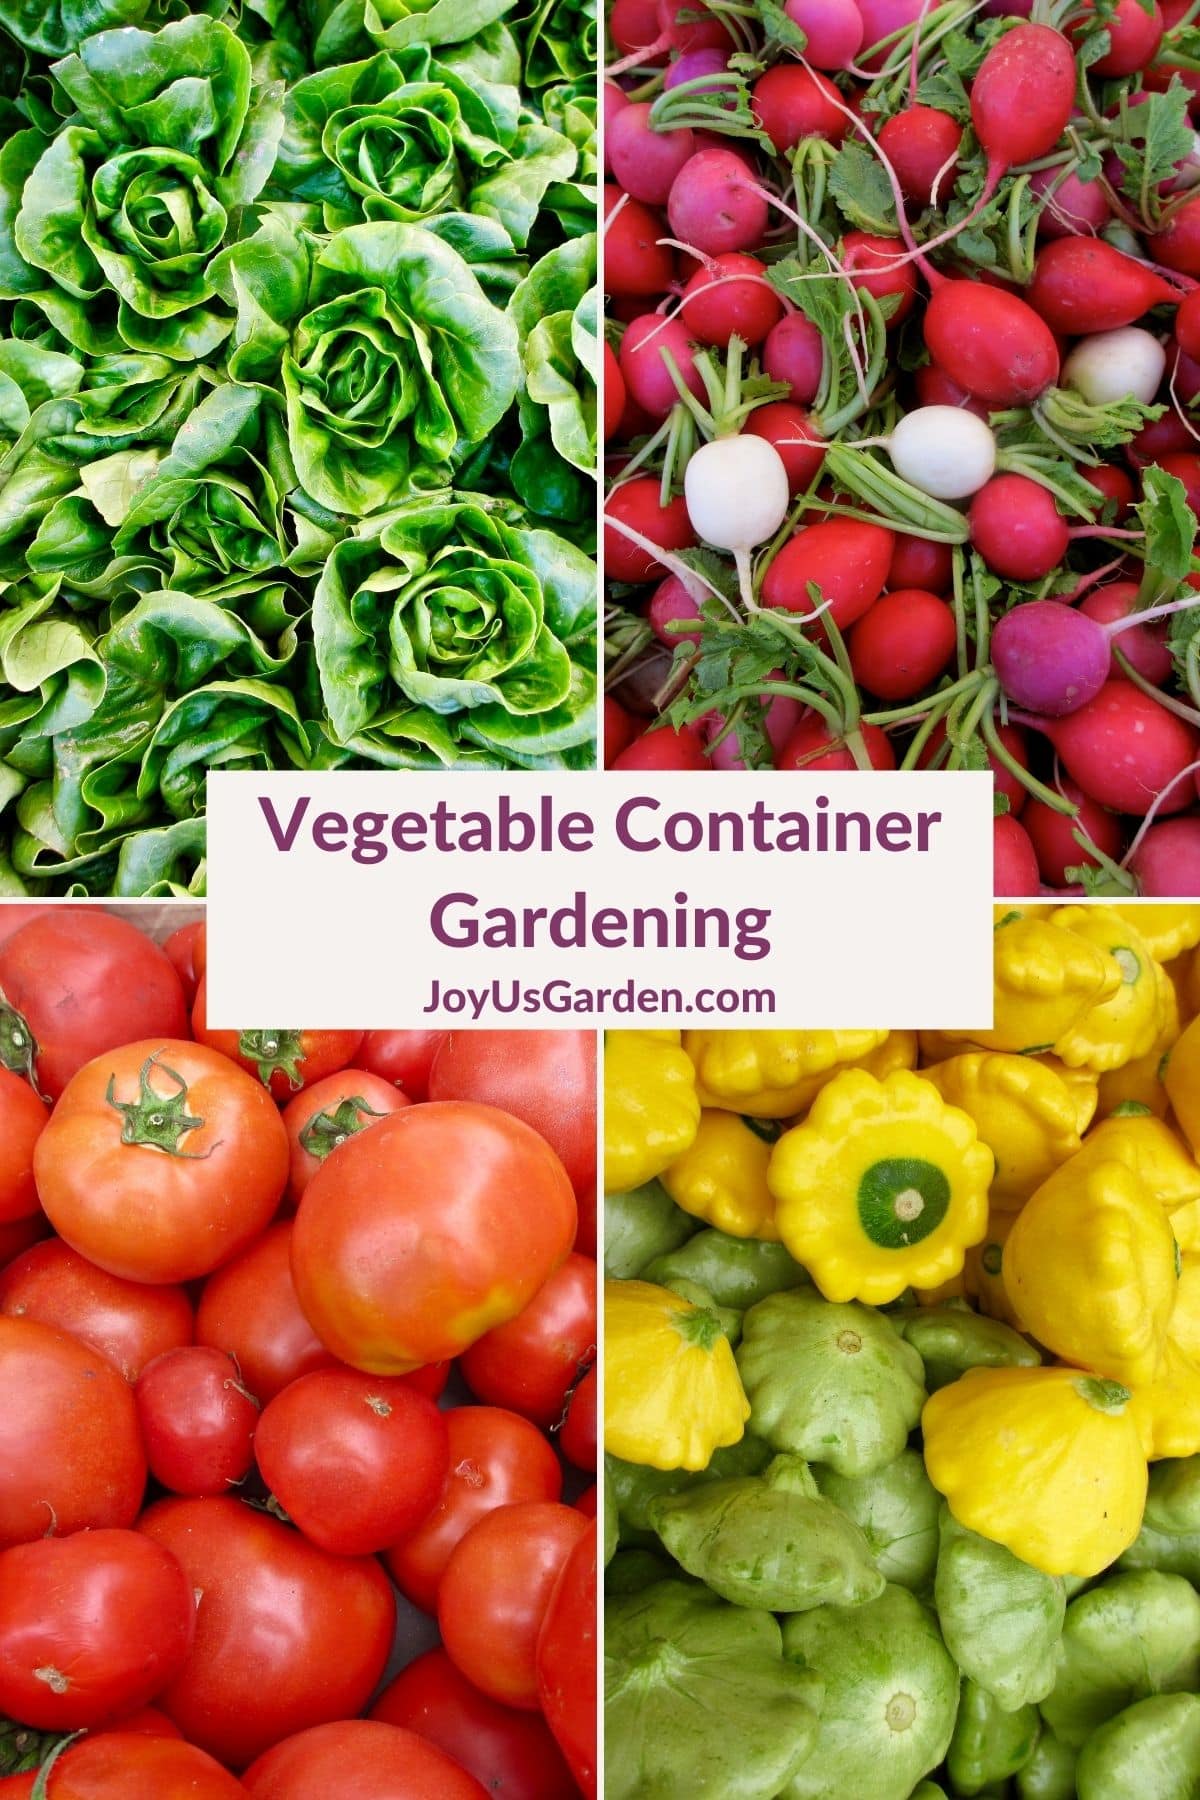  Vrtnarjenje z zelenjavo v posodah: pridelovanje hrane na domu